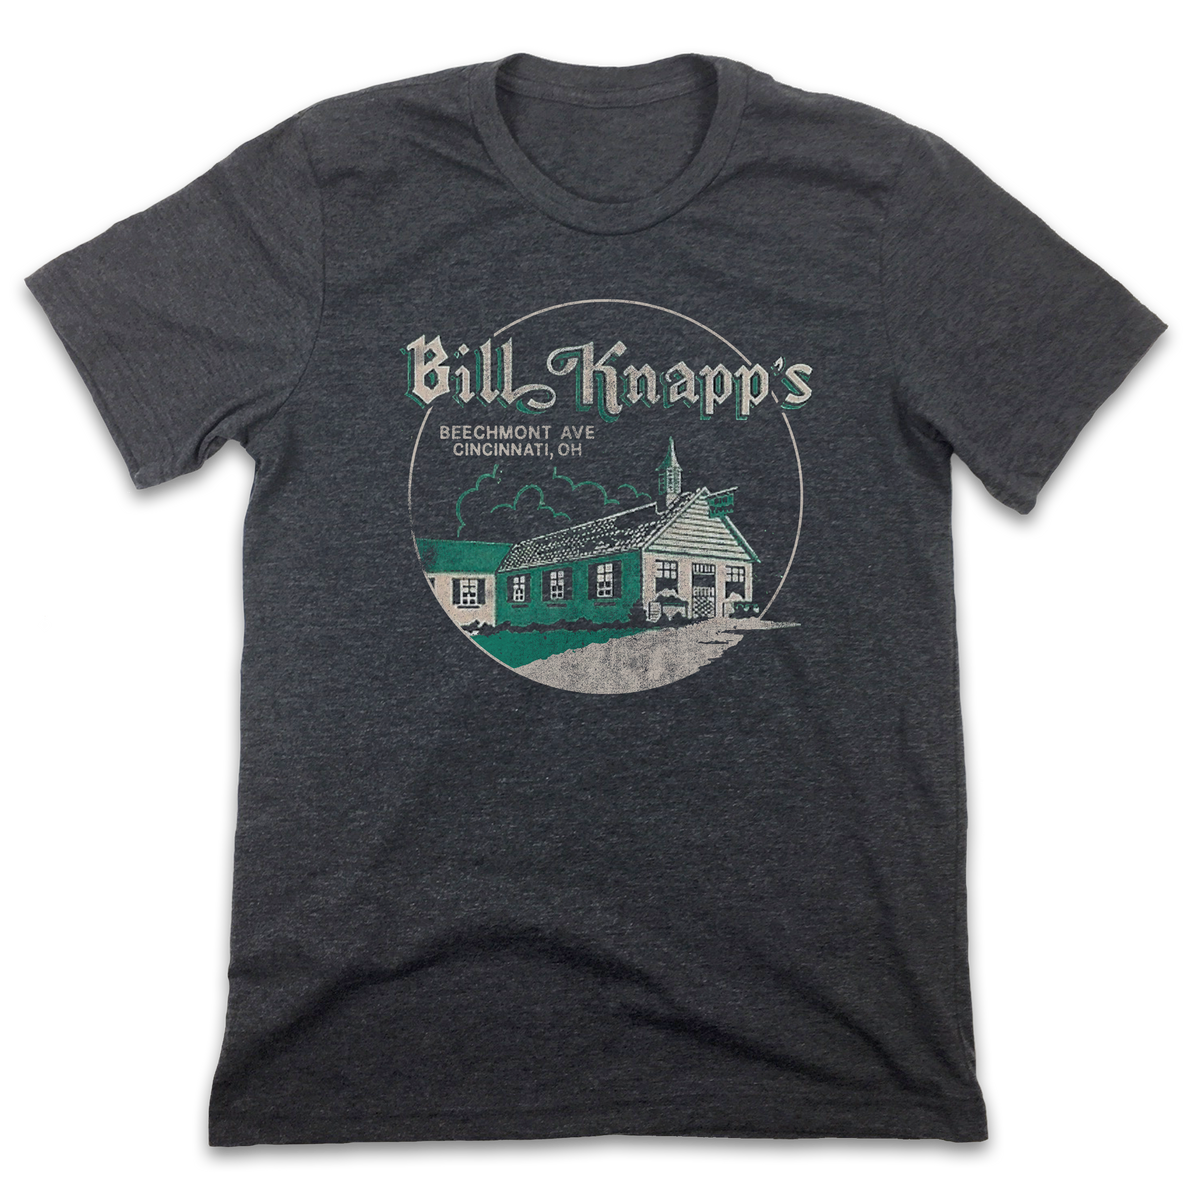 Bill Knapp's - Old School Shirts- Retro Sports T Shirts